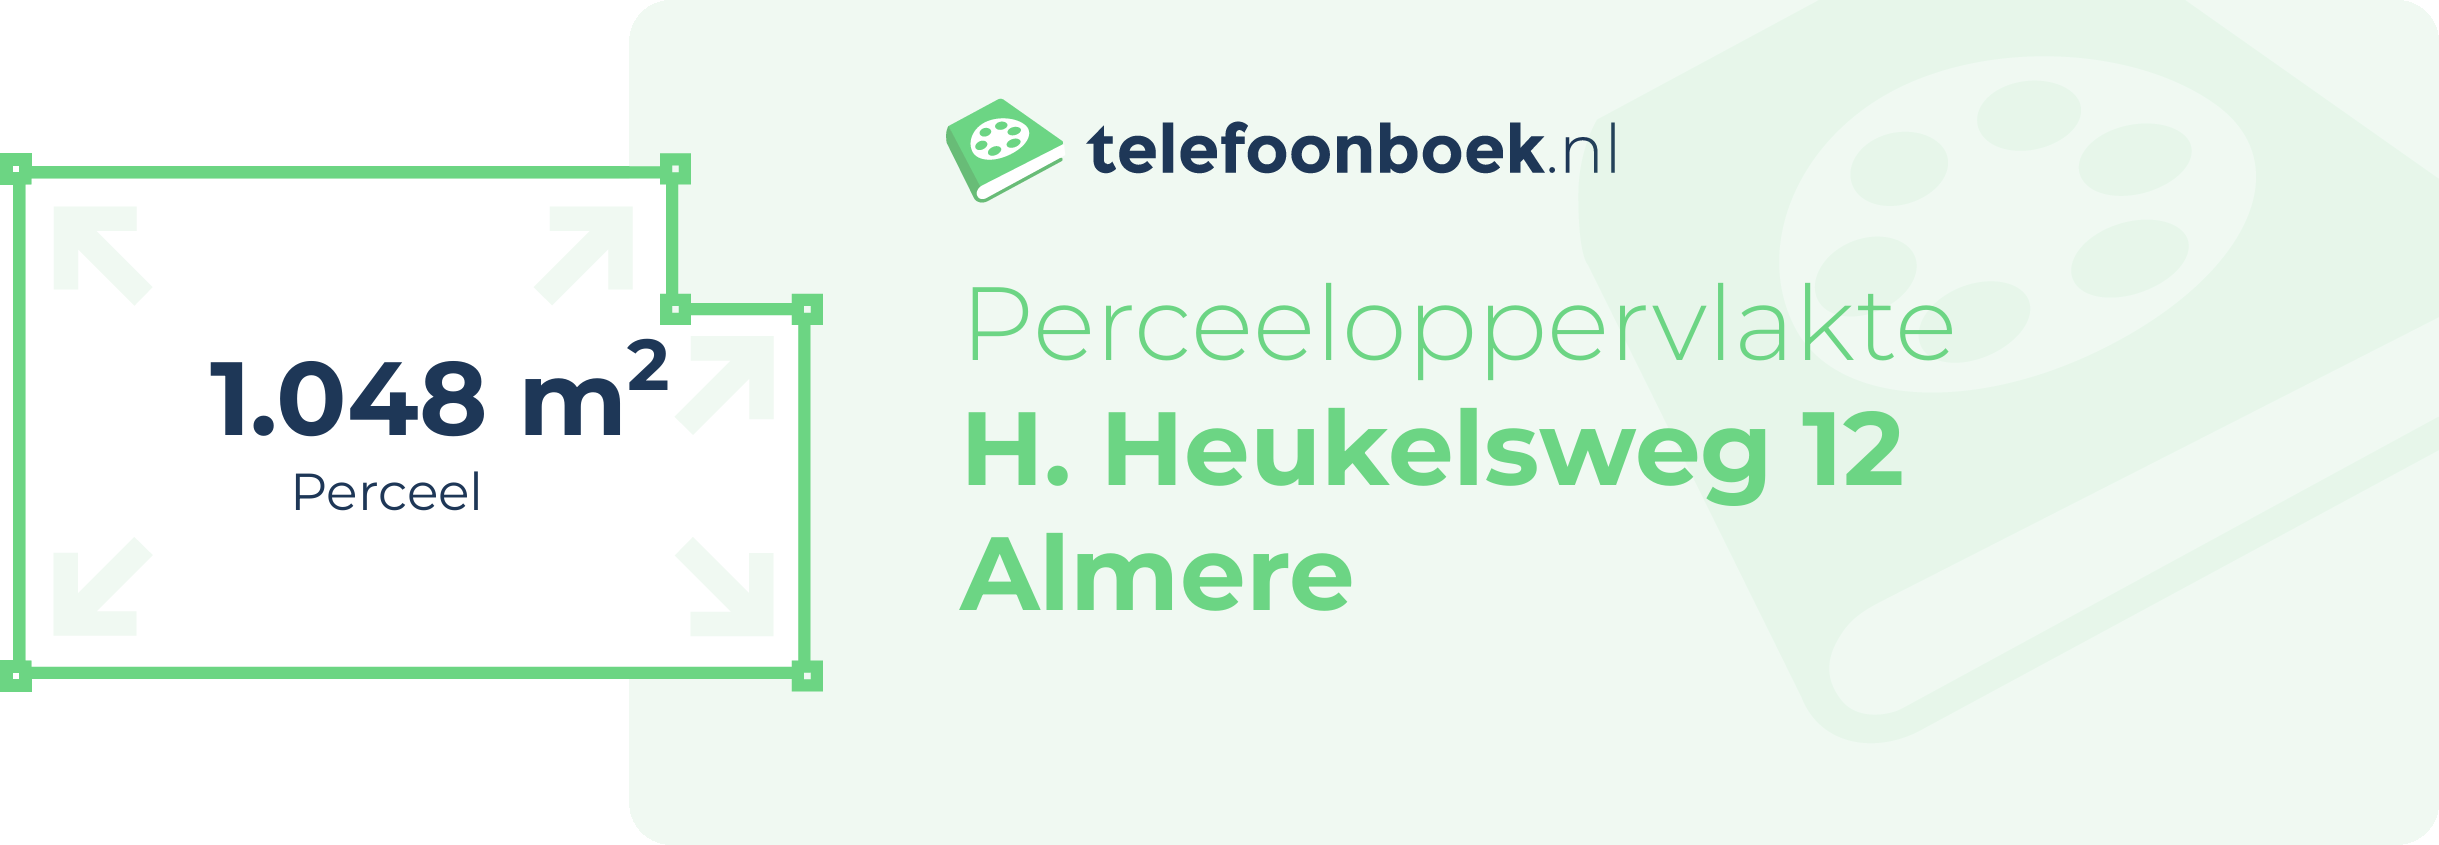 Perceeloppervlakte H. Heukelsweg 12 Almere